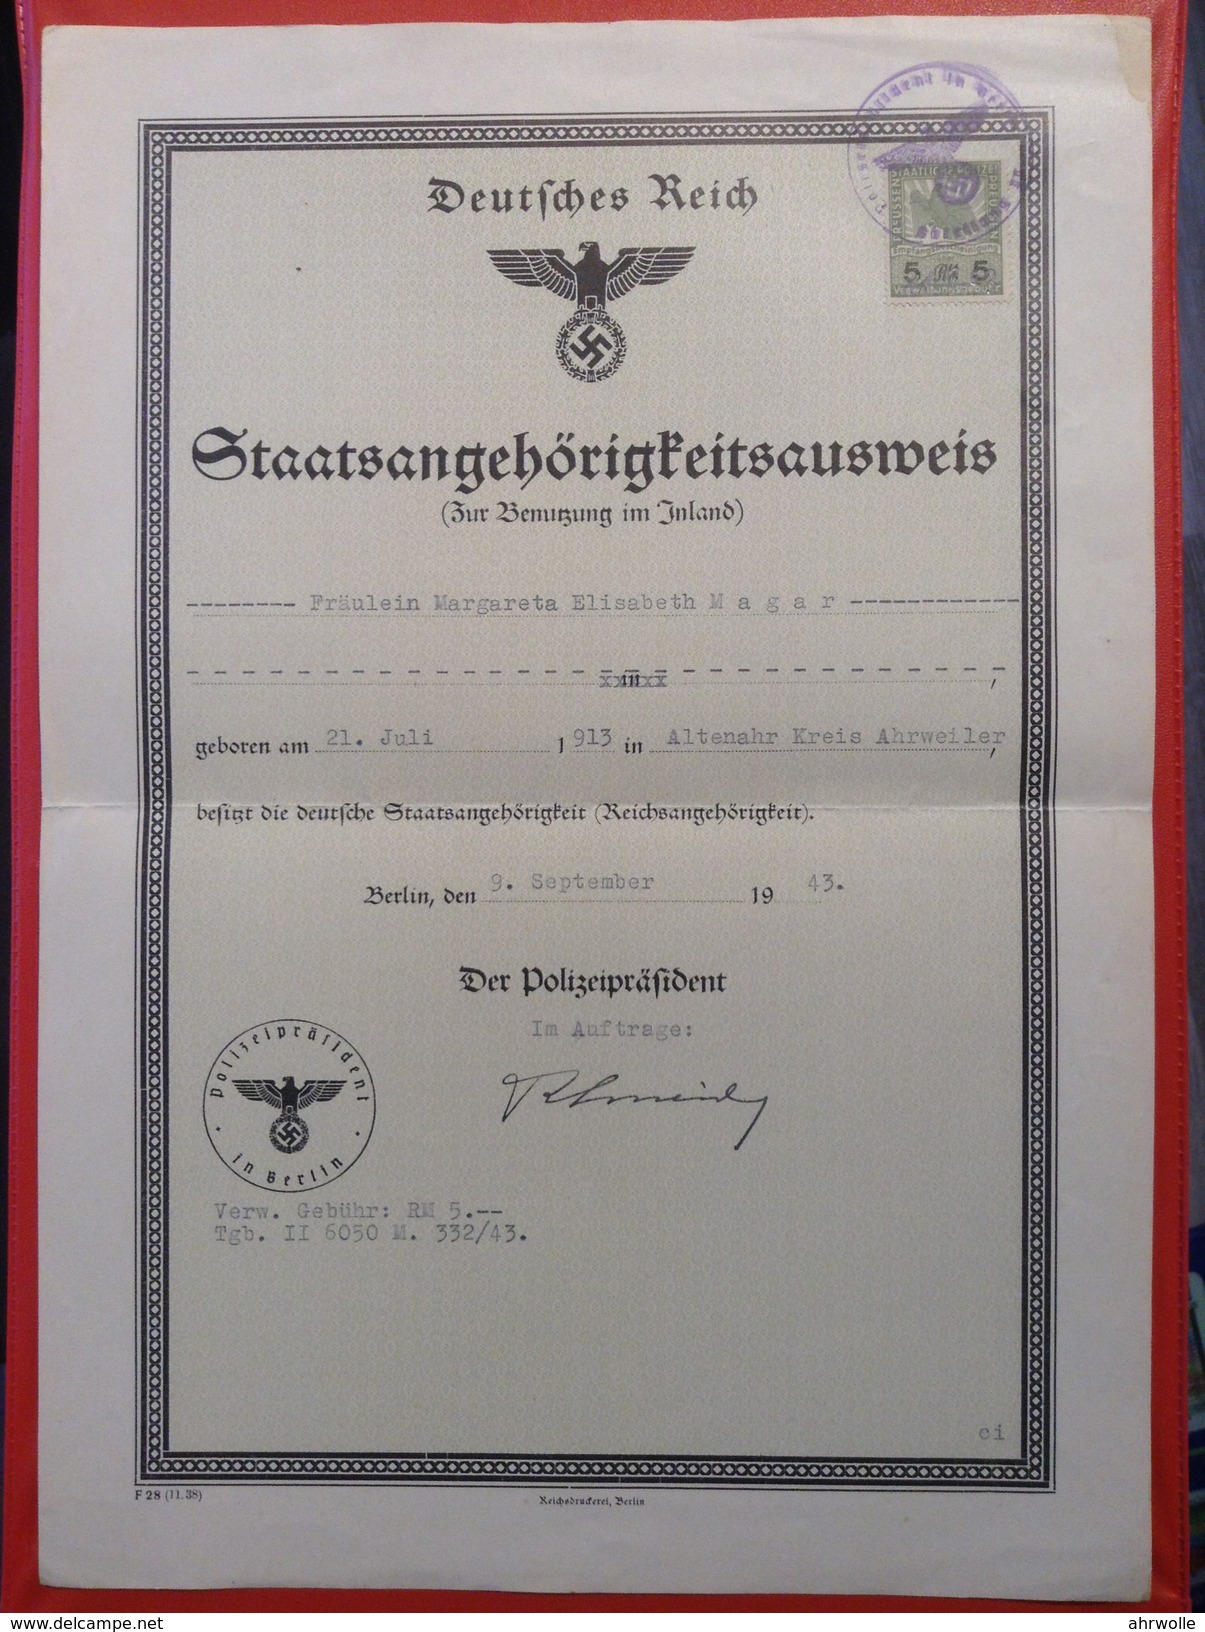 Deutsches Reich Staatsangehörigkeitsausweis Zur Benutzung Im Inland Berlin 1943 Stempel Polizeipräsident - Diploma & School Reports